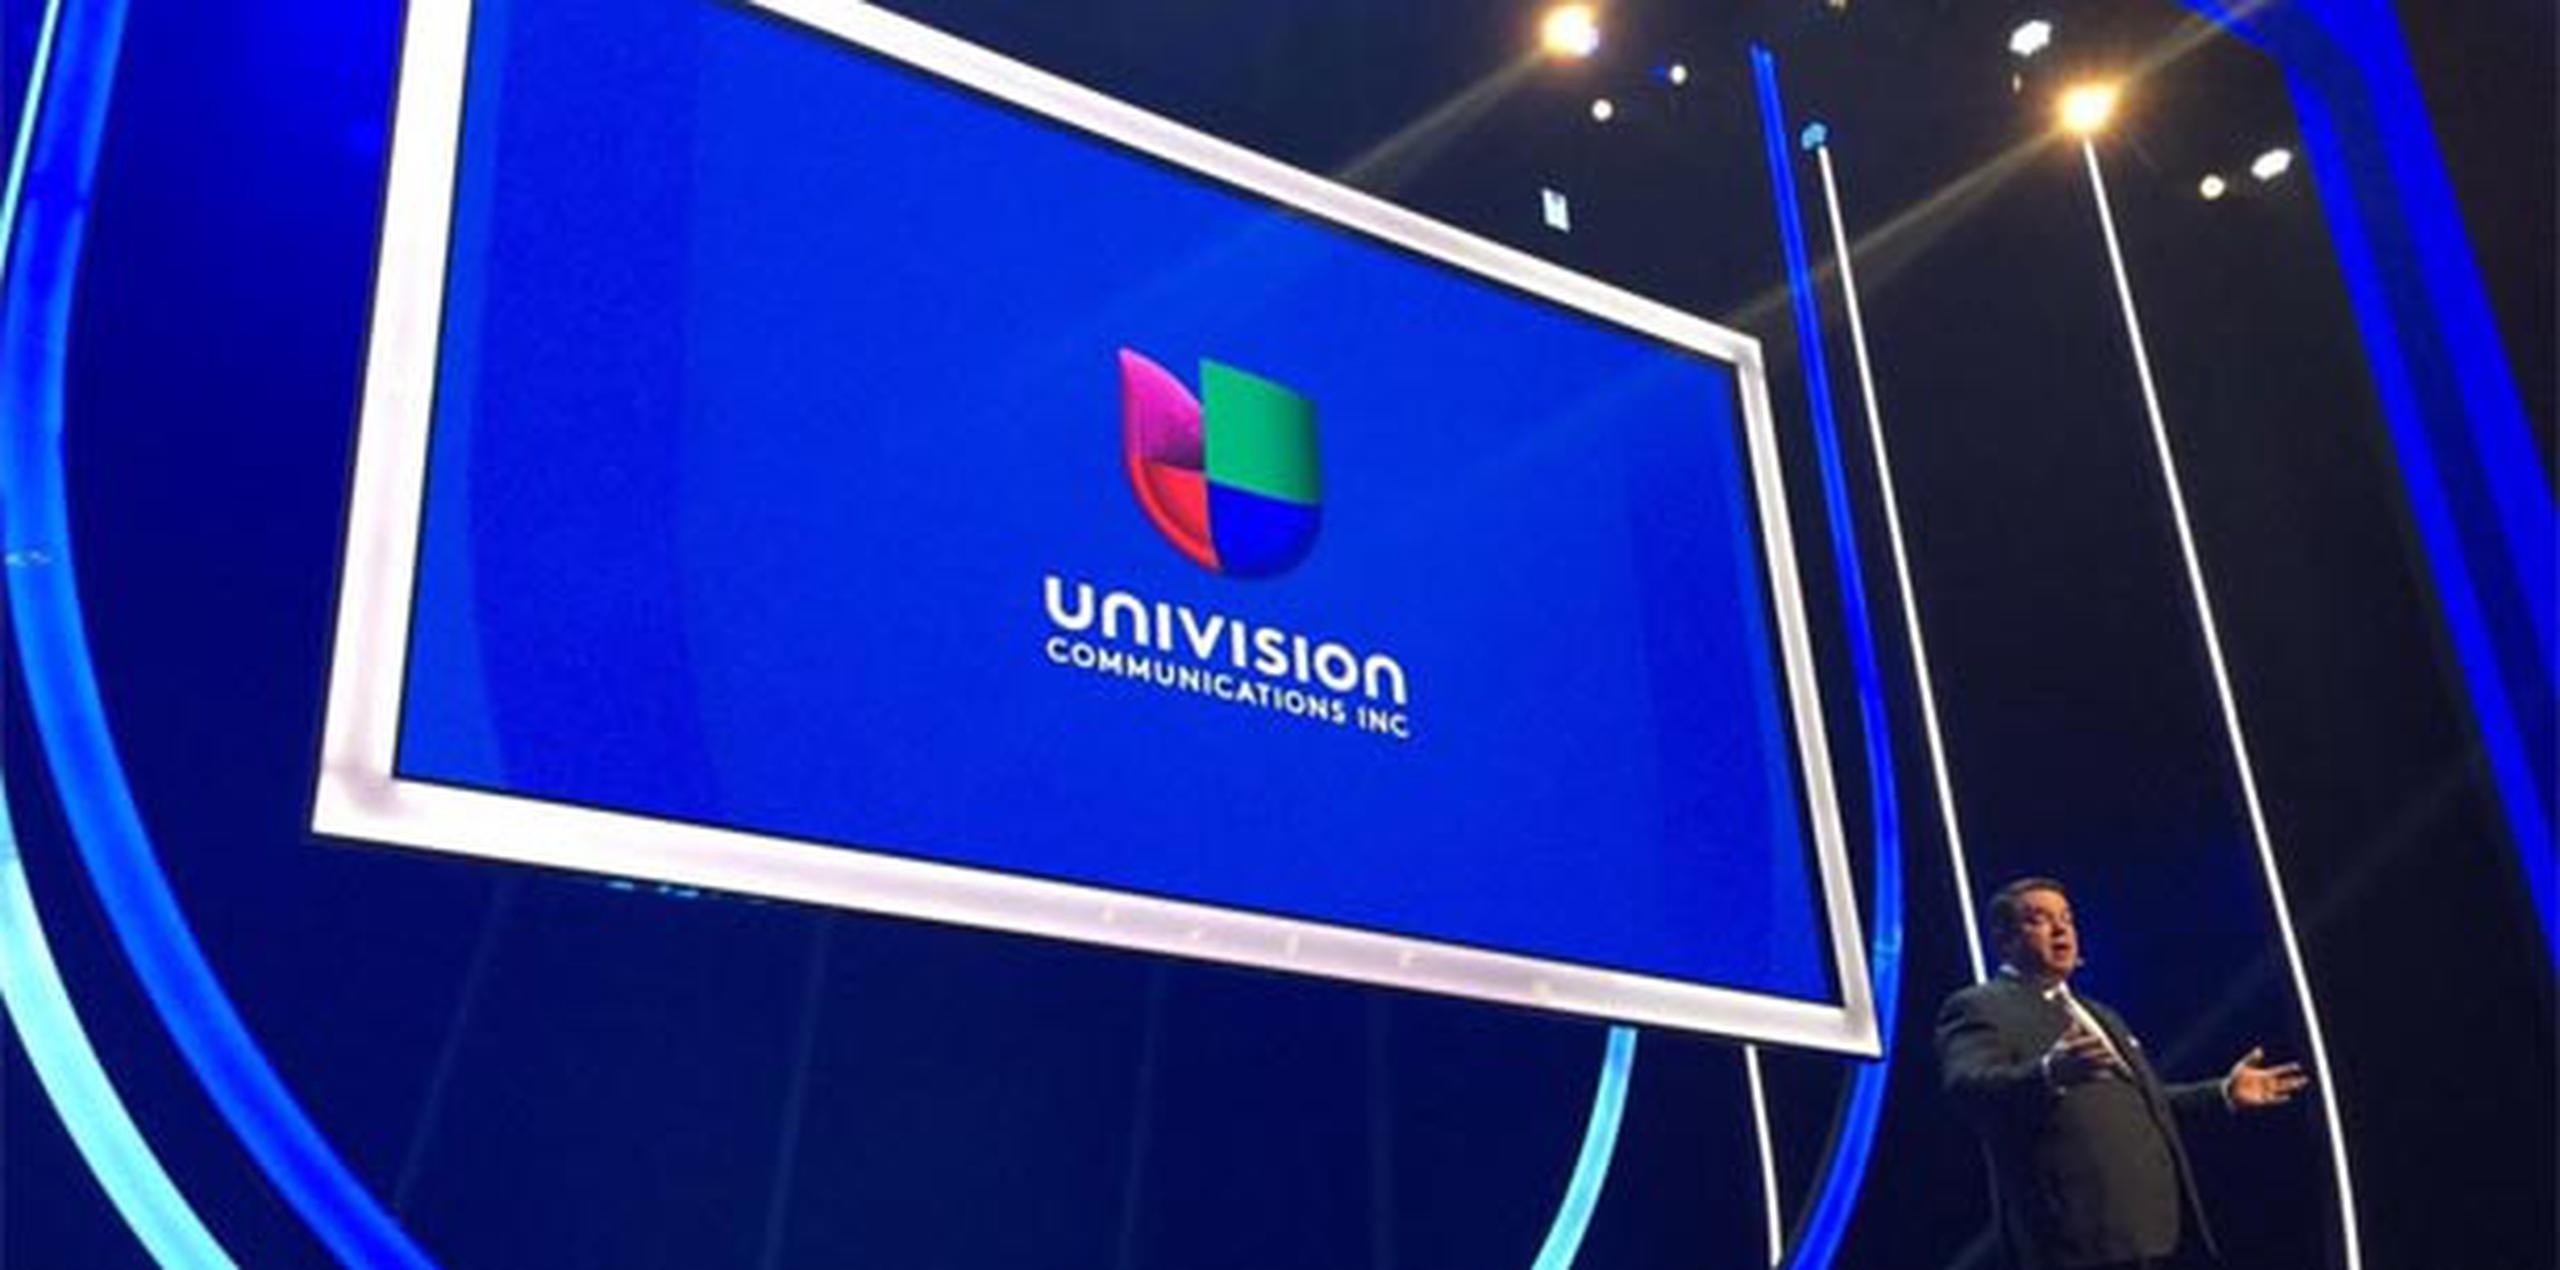 UCI engloba a la cadena Univision, UniMás, Galavisión, UDN y sus plataformas de internet. (Suministrada/Univision)